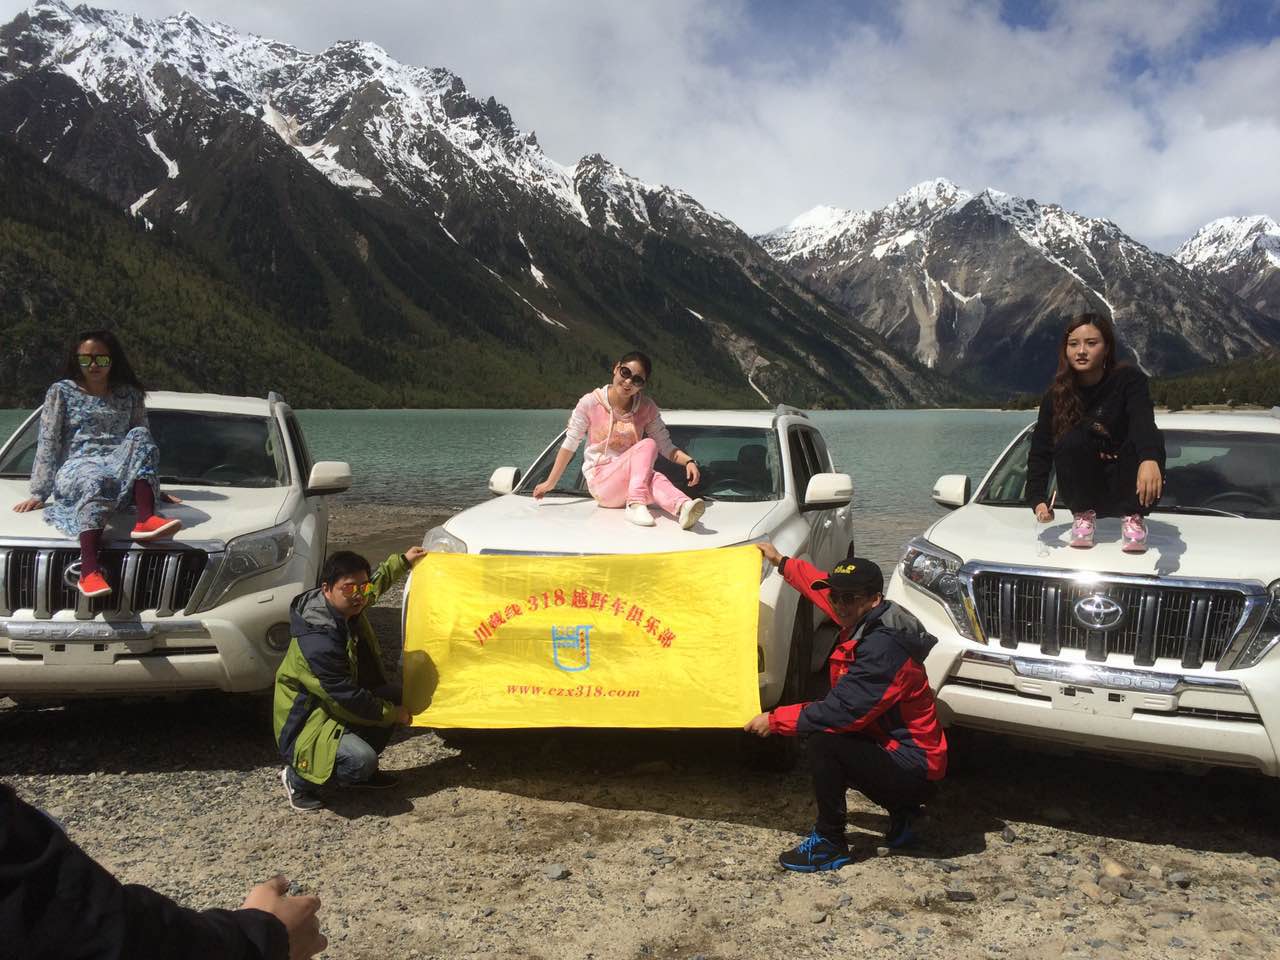 2018年西藏旅游活动之川藏线自驾车队+拼车10天攻略行程